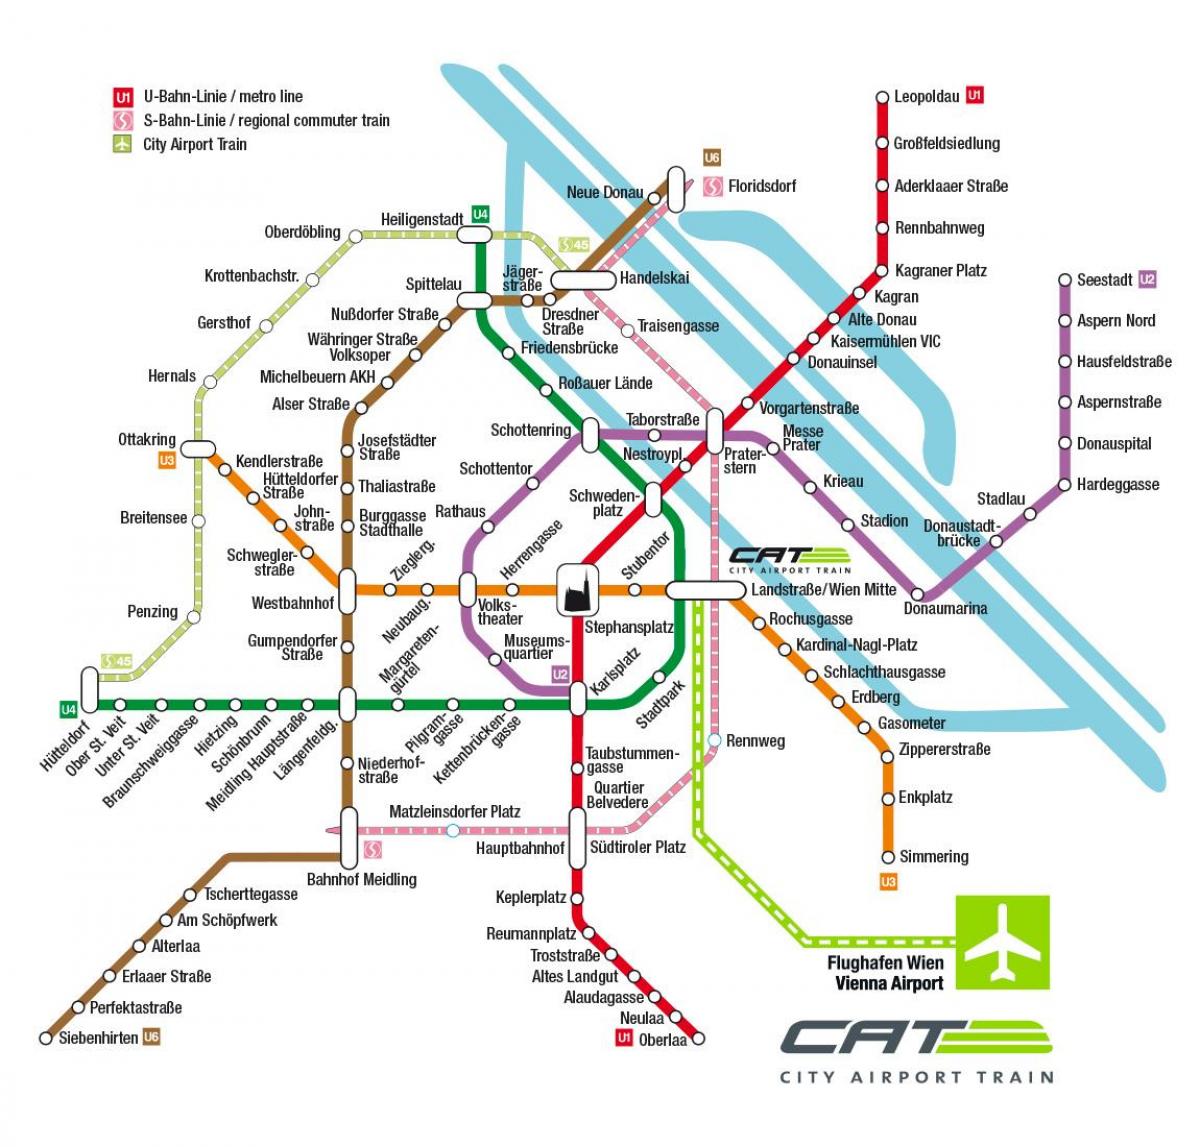 katu city aireportua tren Vienako mapa